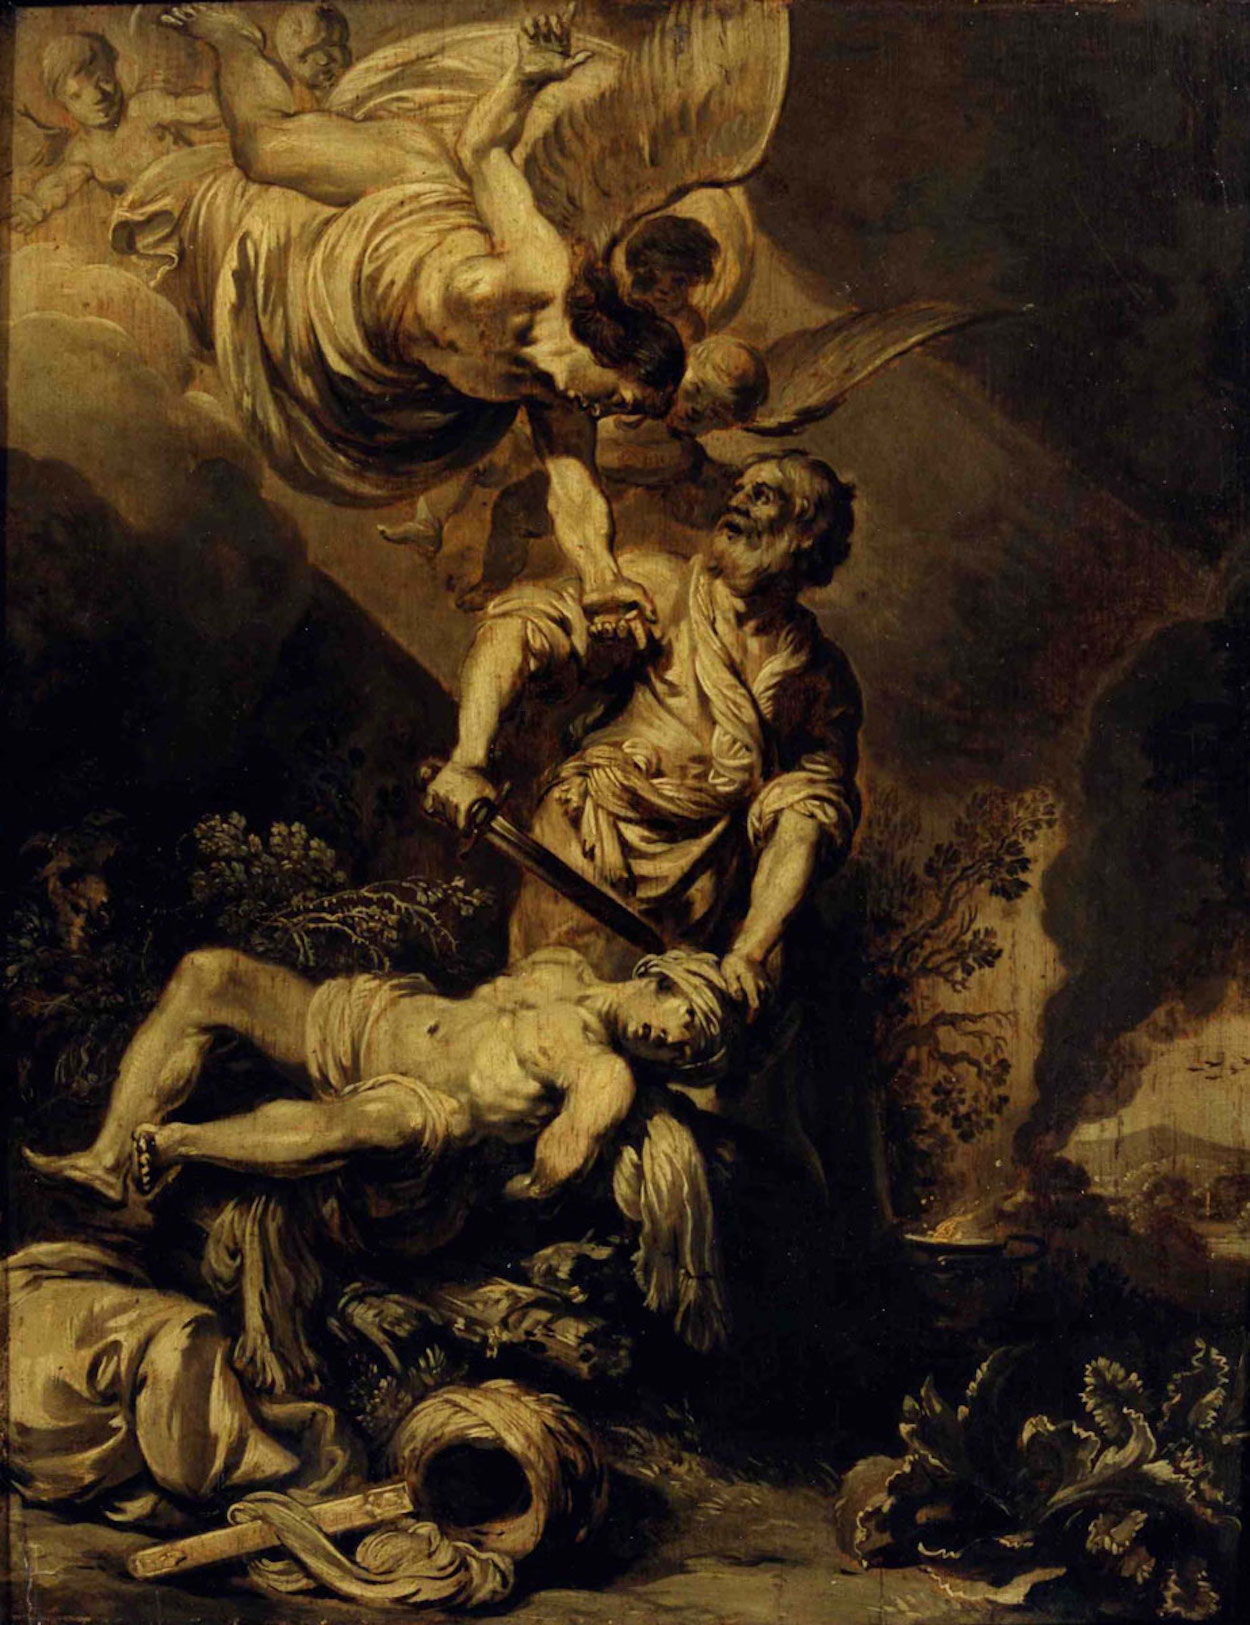 Le sacrifice d'Abraham by Pieter Lastman - c. 1612 Rembrandthuis